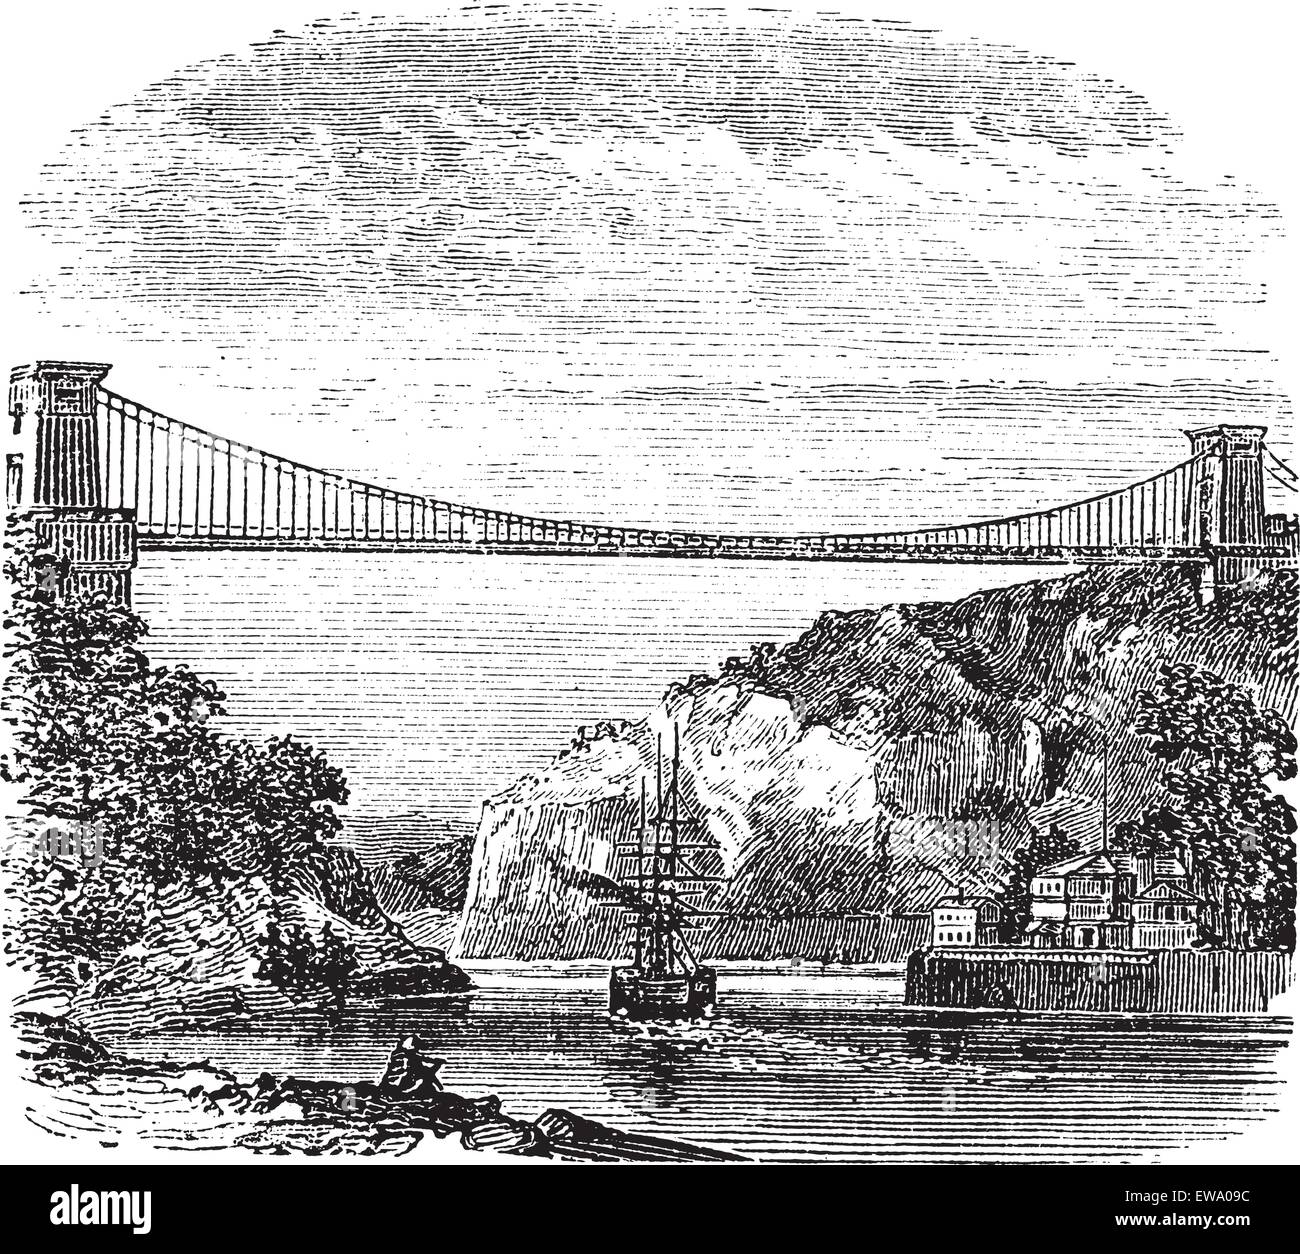 Pont suspendu de Clifton, Clifton, Bristol à Leigh Woods, North Somerset, Angleterre, pendant les années 1890, gravure d'époque. Vieux Illustration de Vecteur